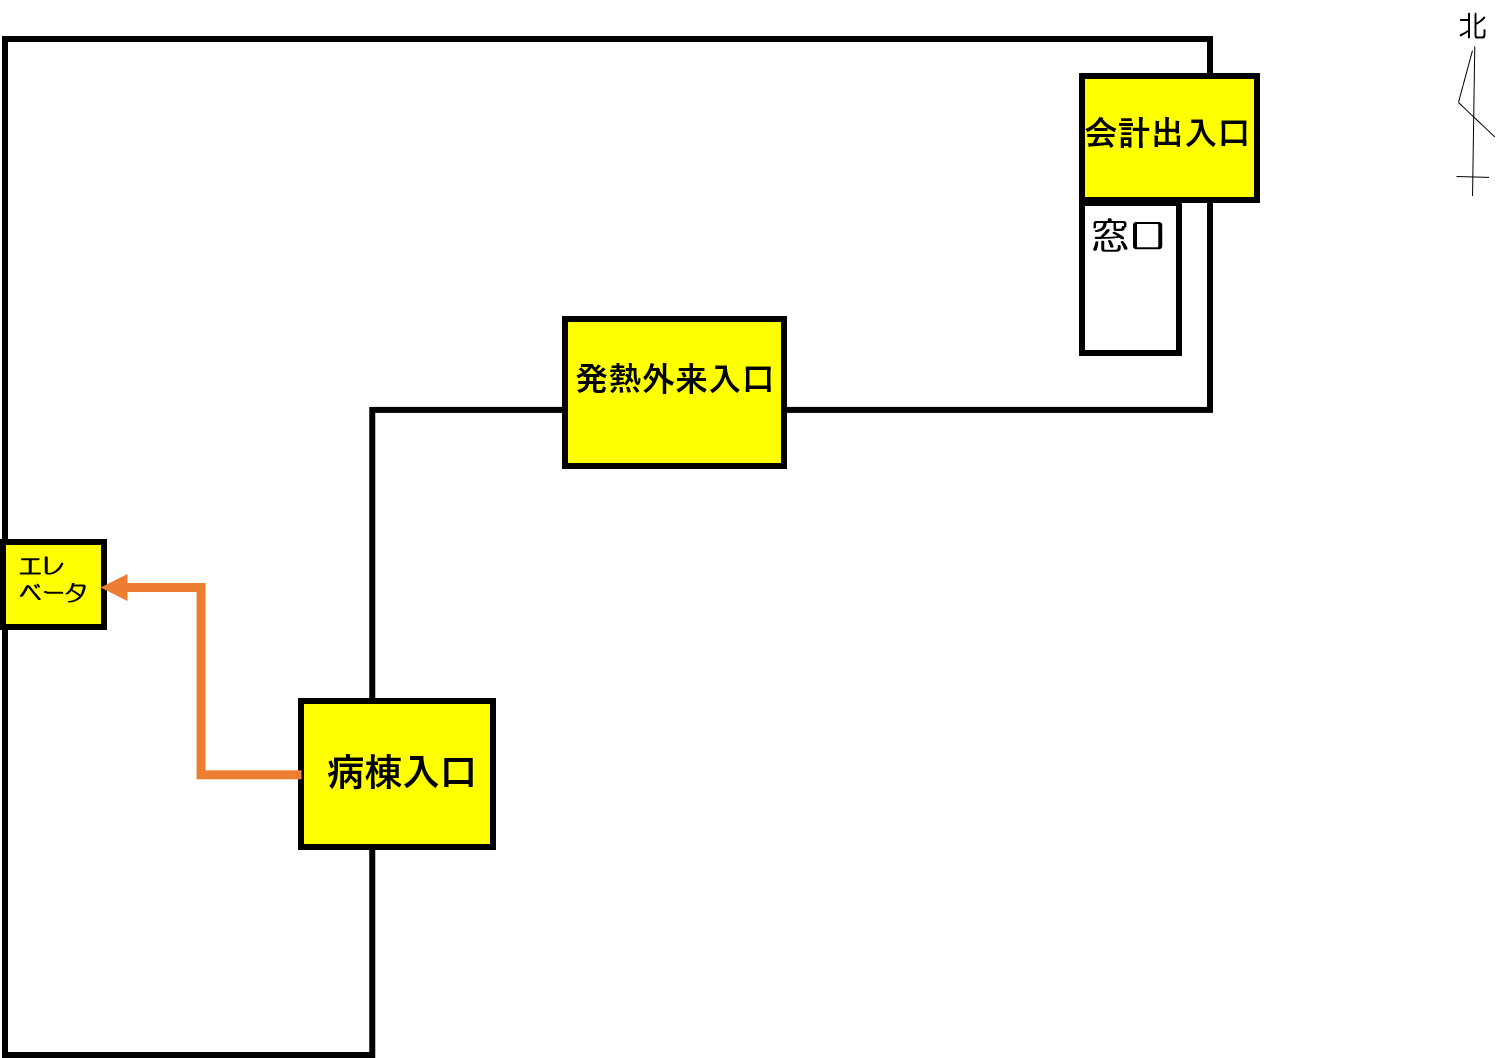 図2